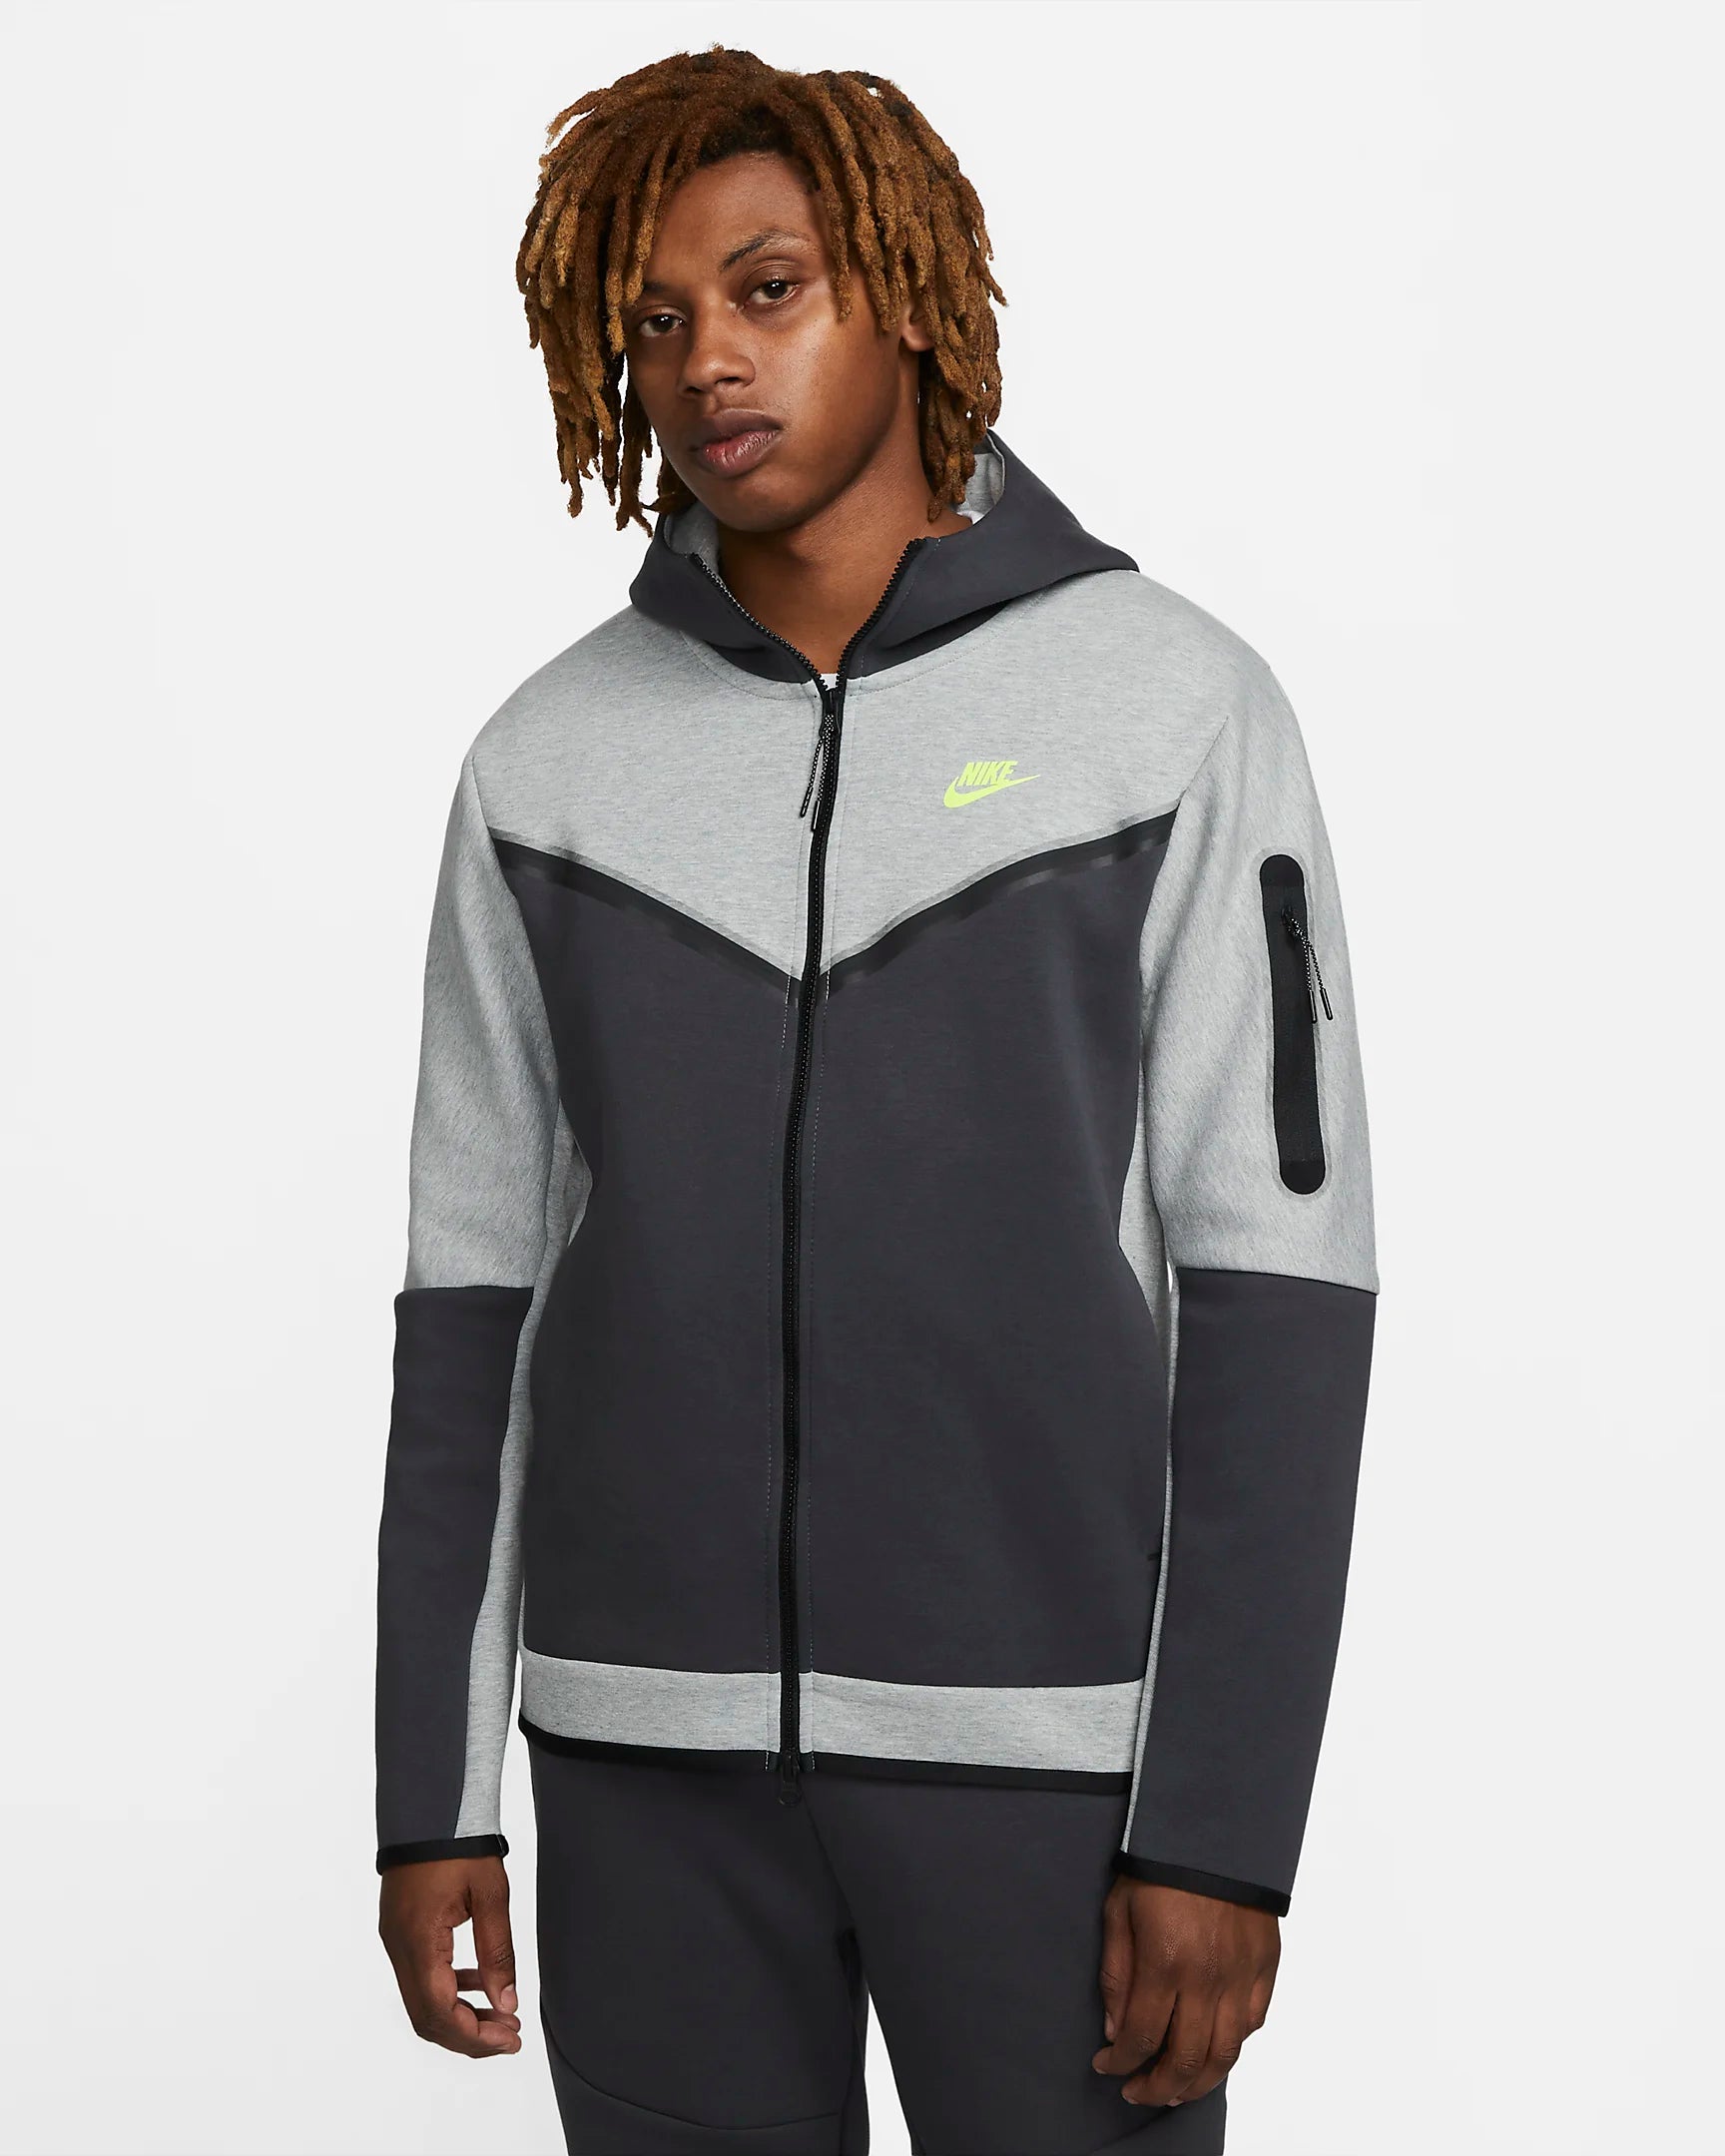 Veste à capuche Nike Tech Fleece - Gris/Vert